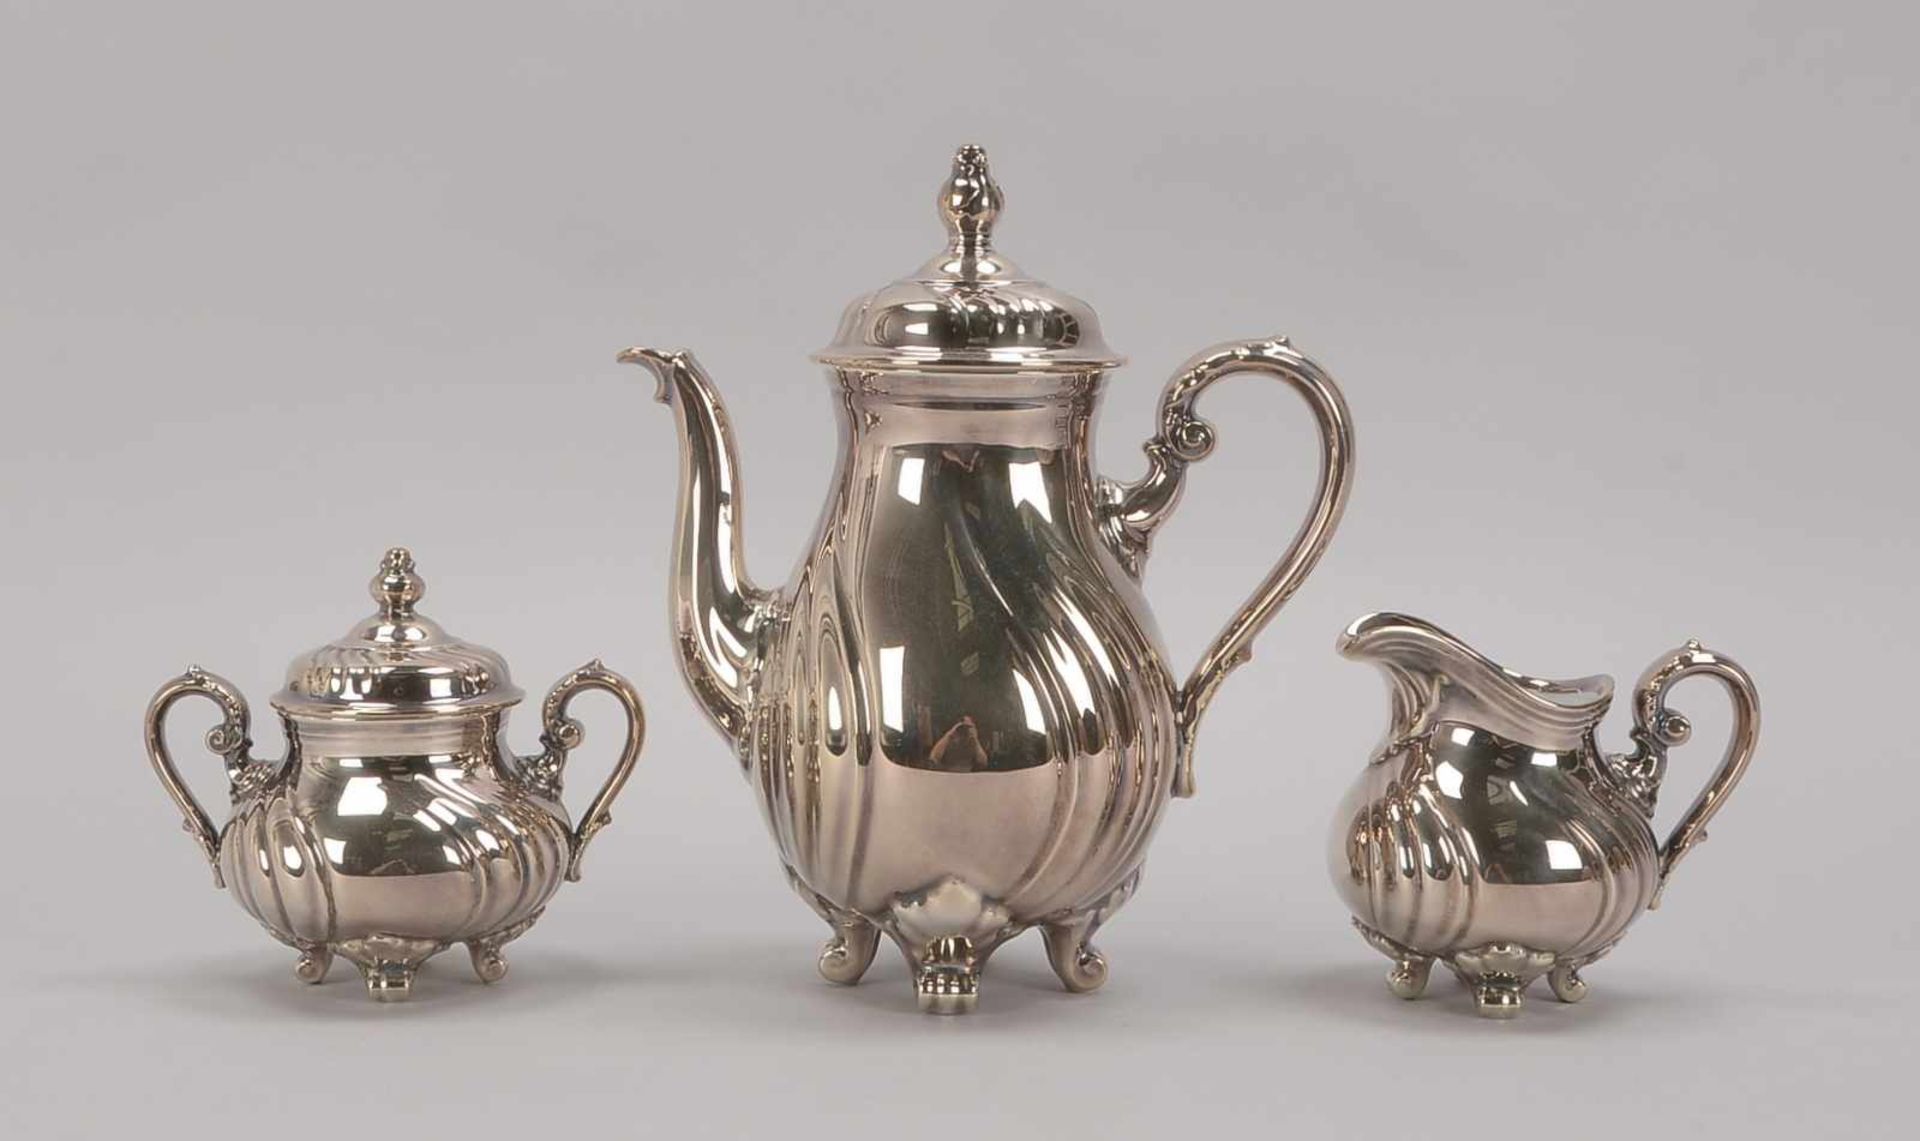 Rosenthal, Kaffeekern, Porzellan mit 1000/1000-Silberauflage; Höhe Kanne 27 cm